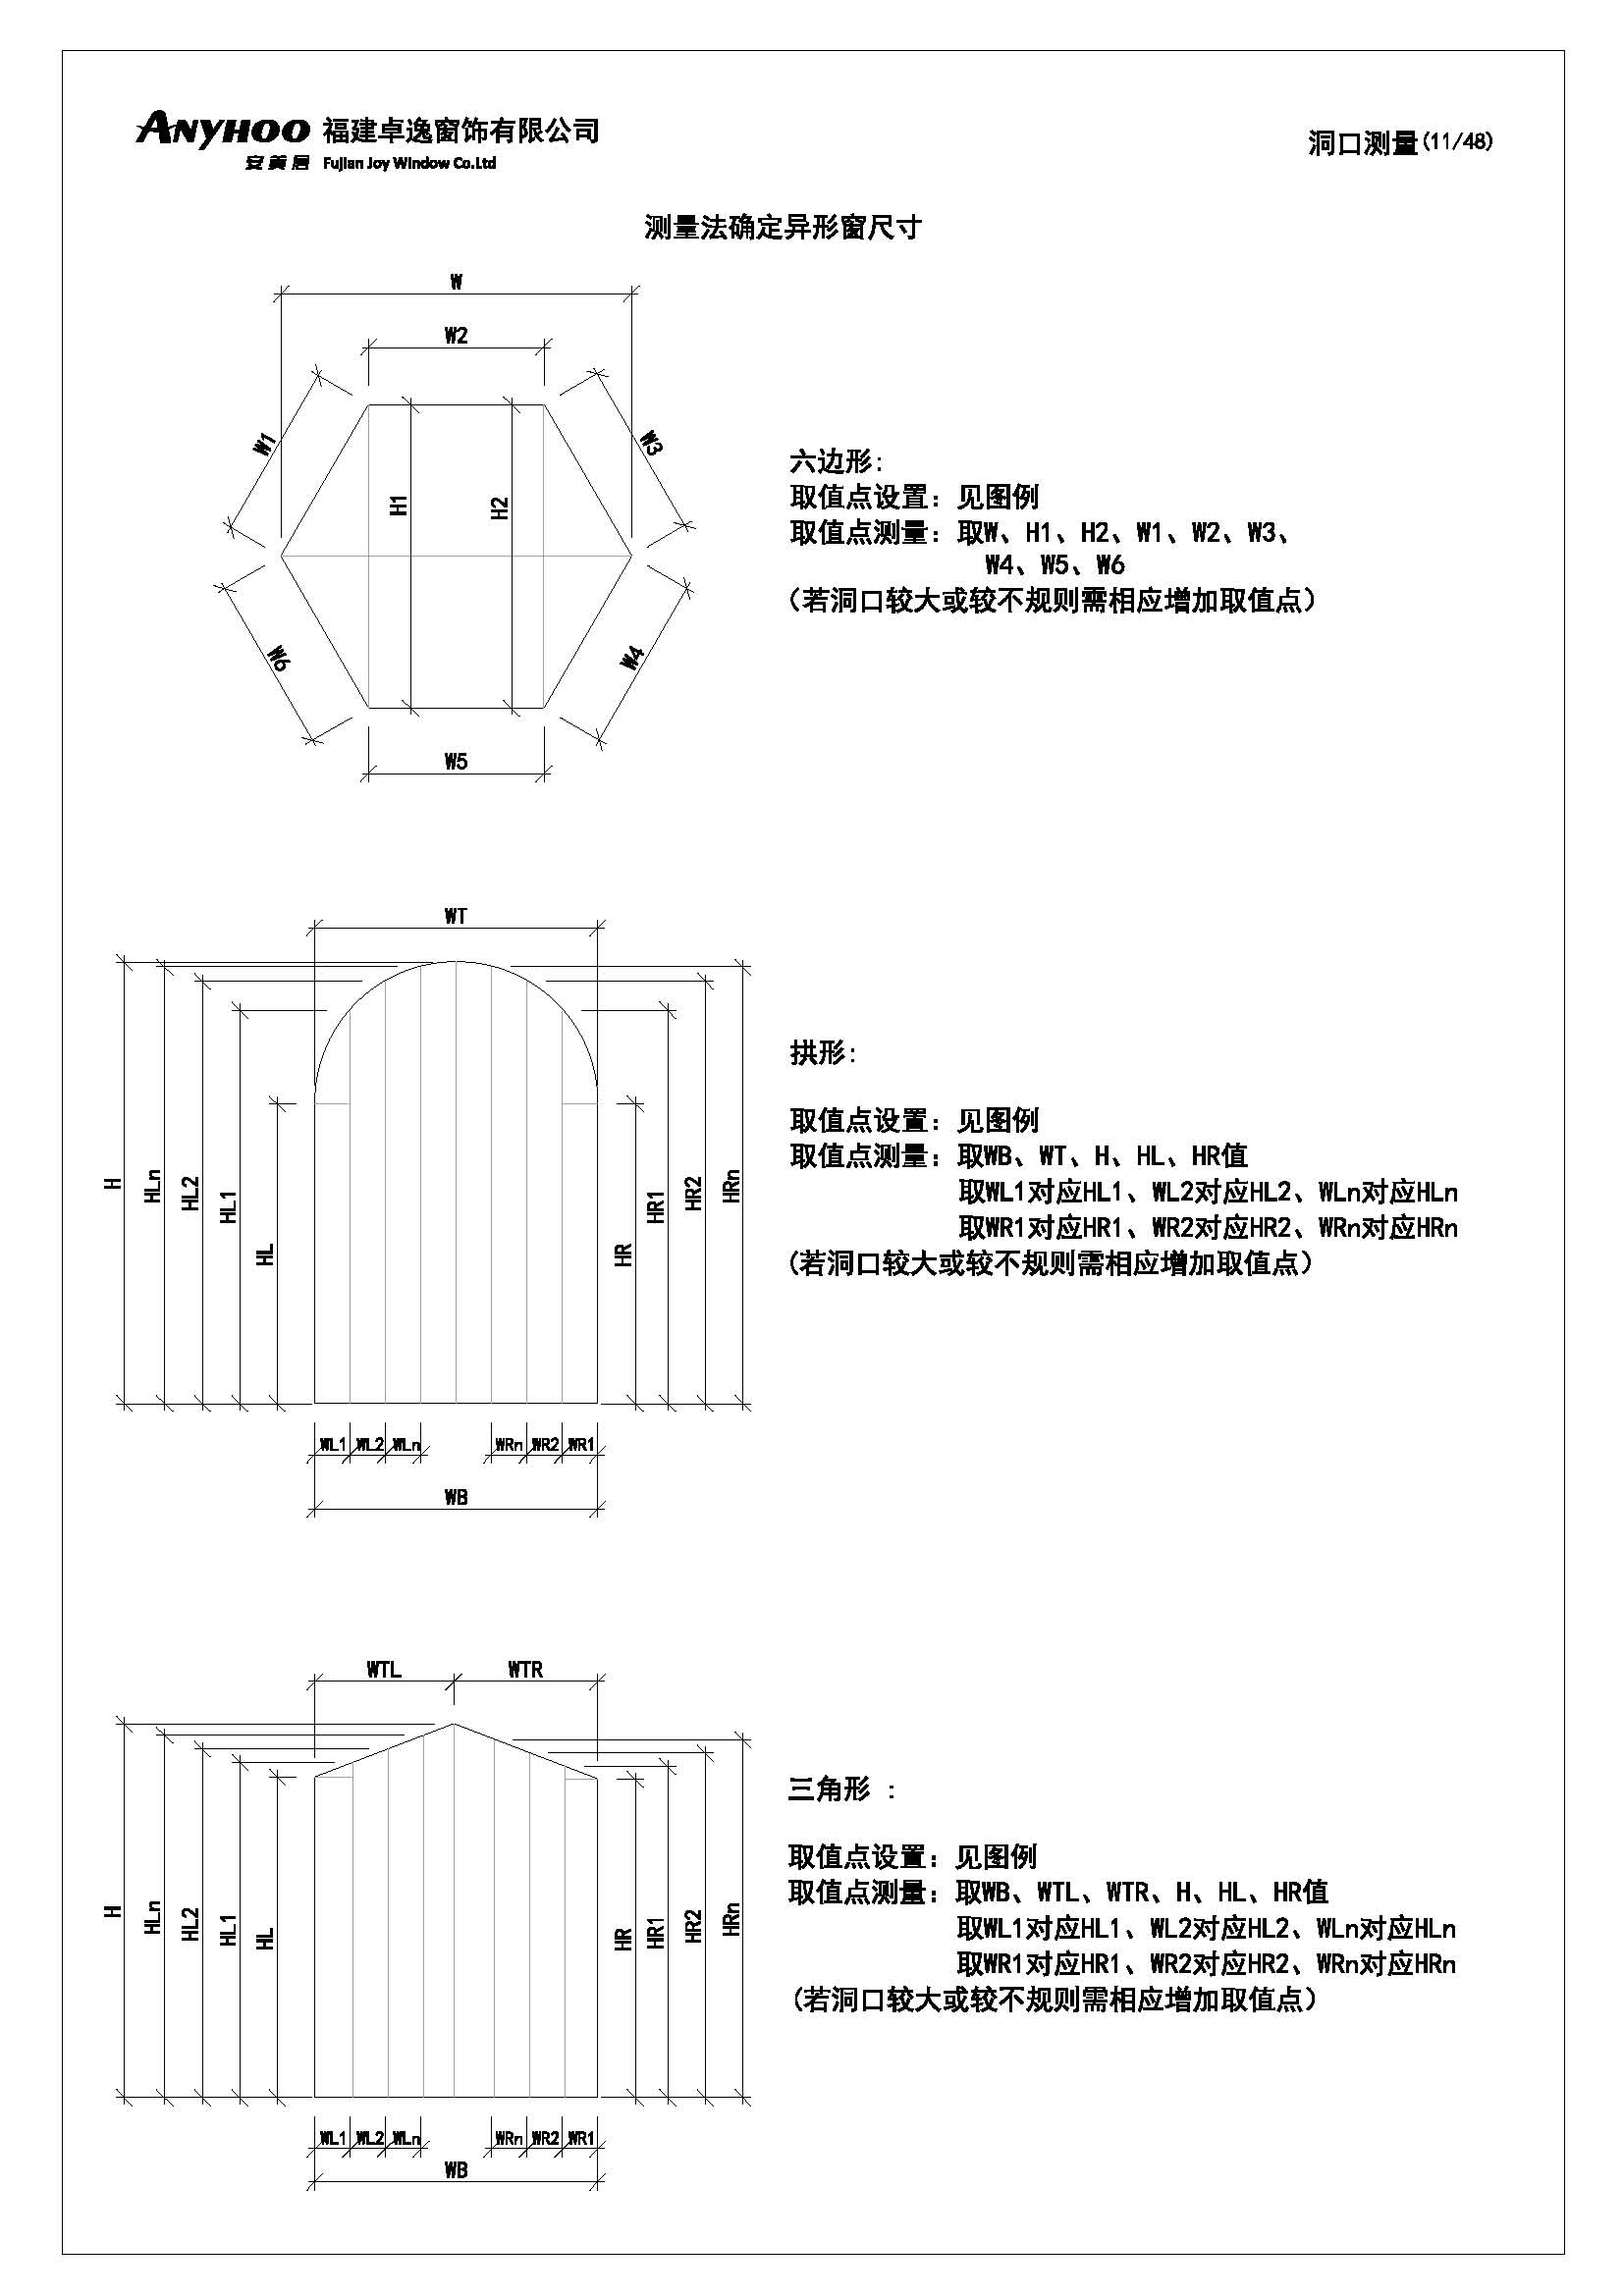 anyhoo技术手册中文版20190711(1)_页面_11.jpg